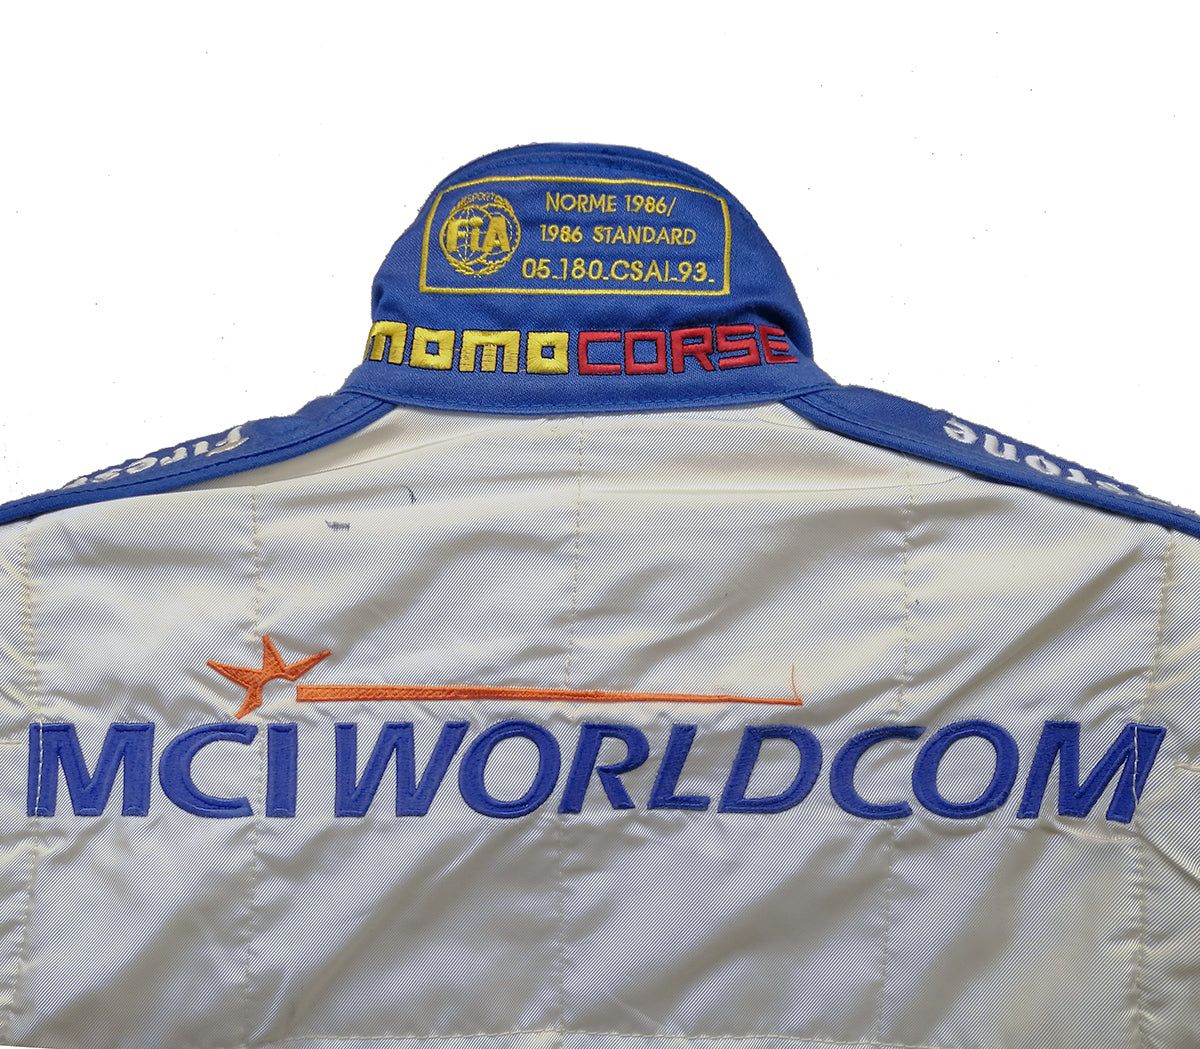 1999 Cristiano da Matta Signed Arciero-Wells Racing CART IndyCar Race Used Suit